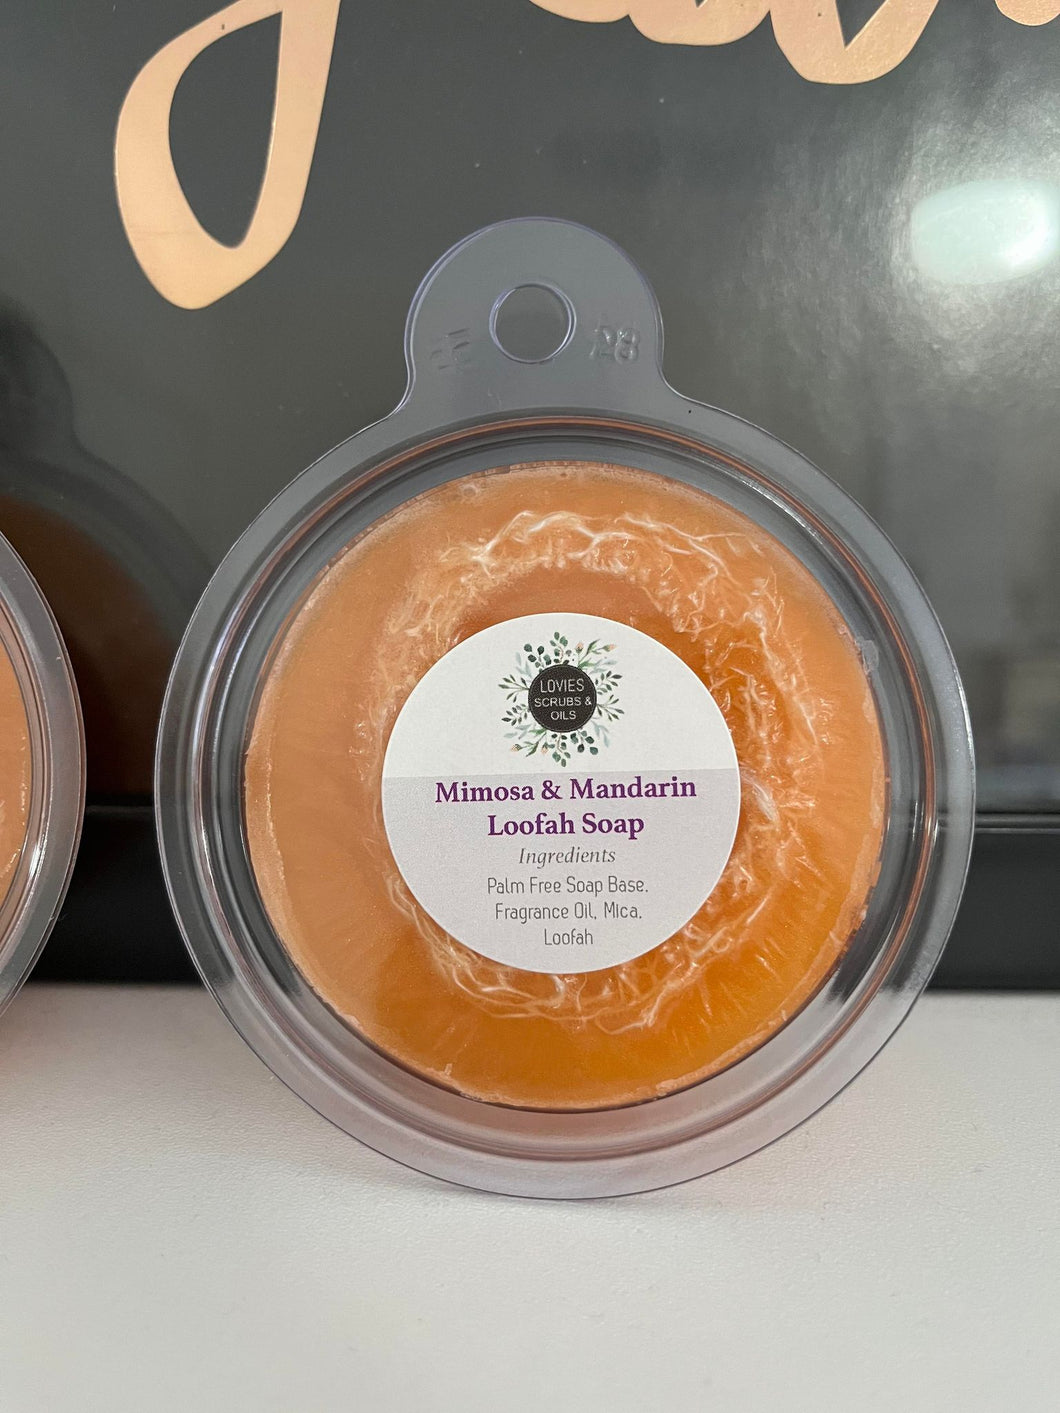 Mimosa & Mandarin Loofah Soap